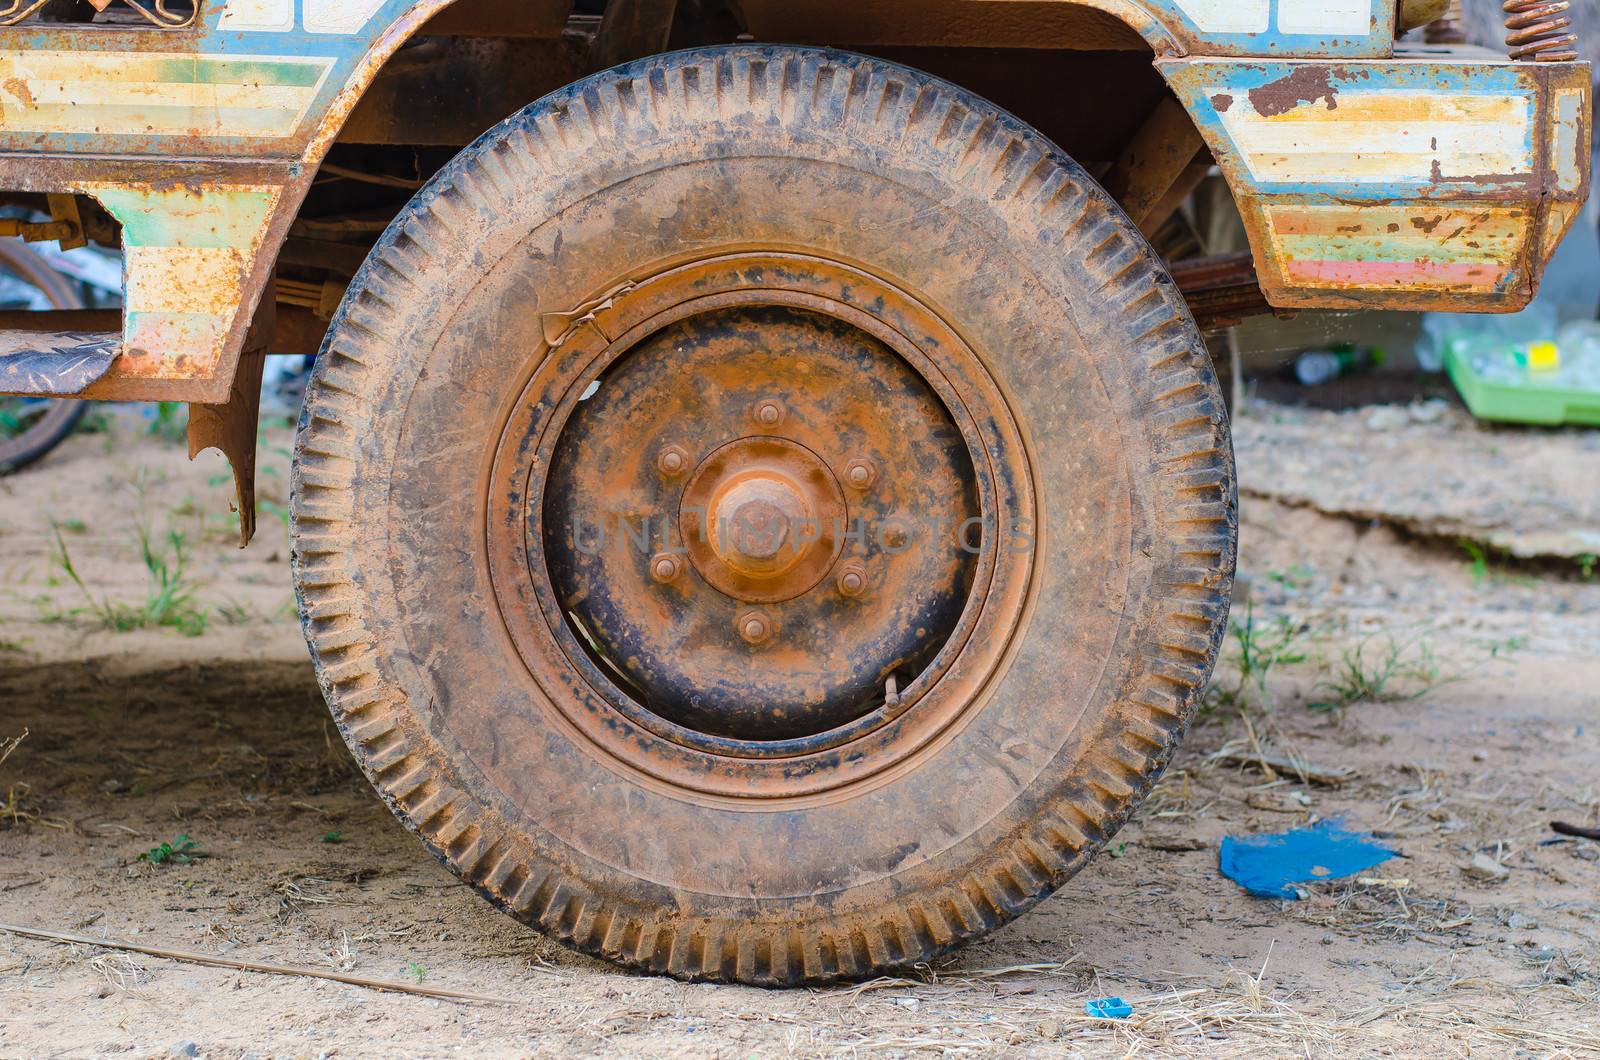 Dirty old wheel, dry mud on wheel